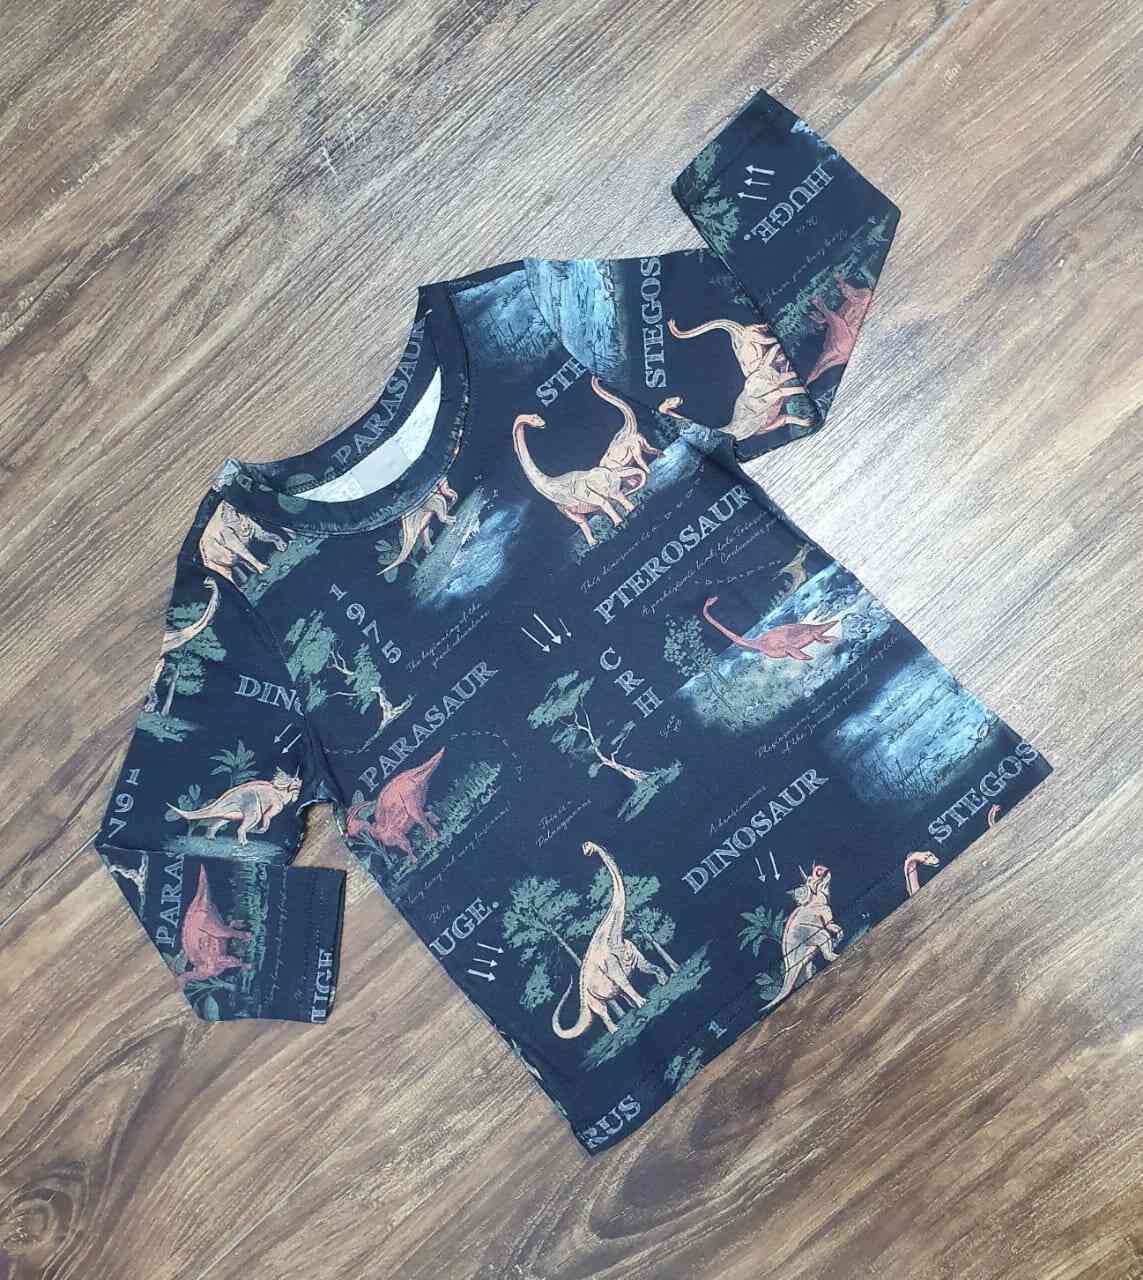 Camiseta Dinossauro Infantil